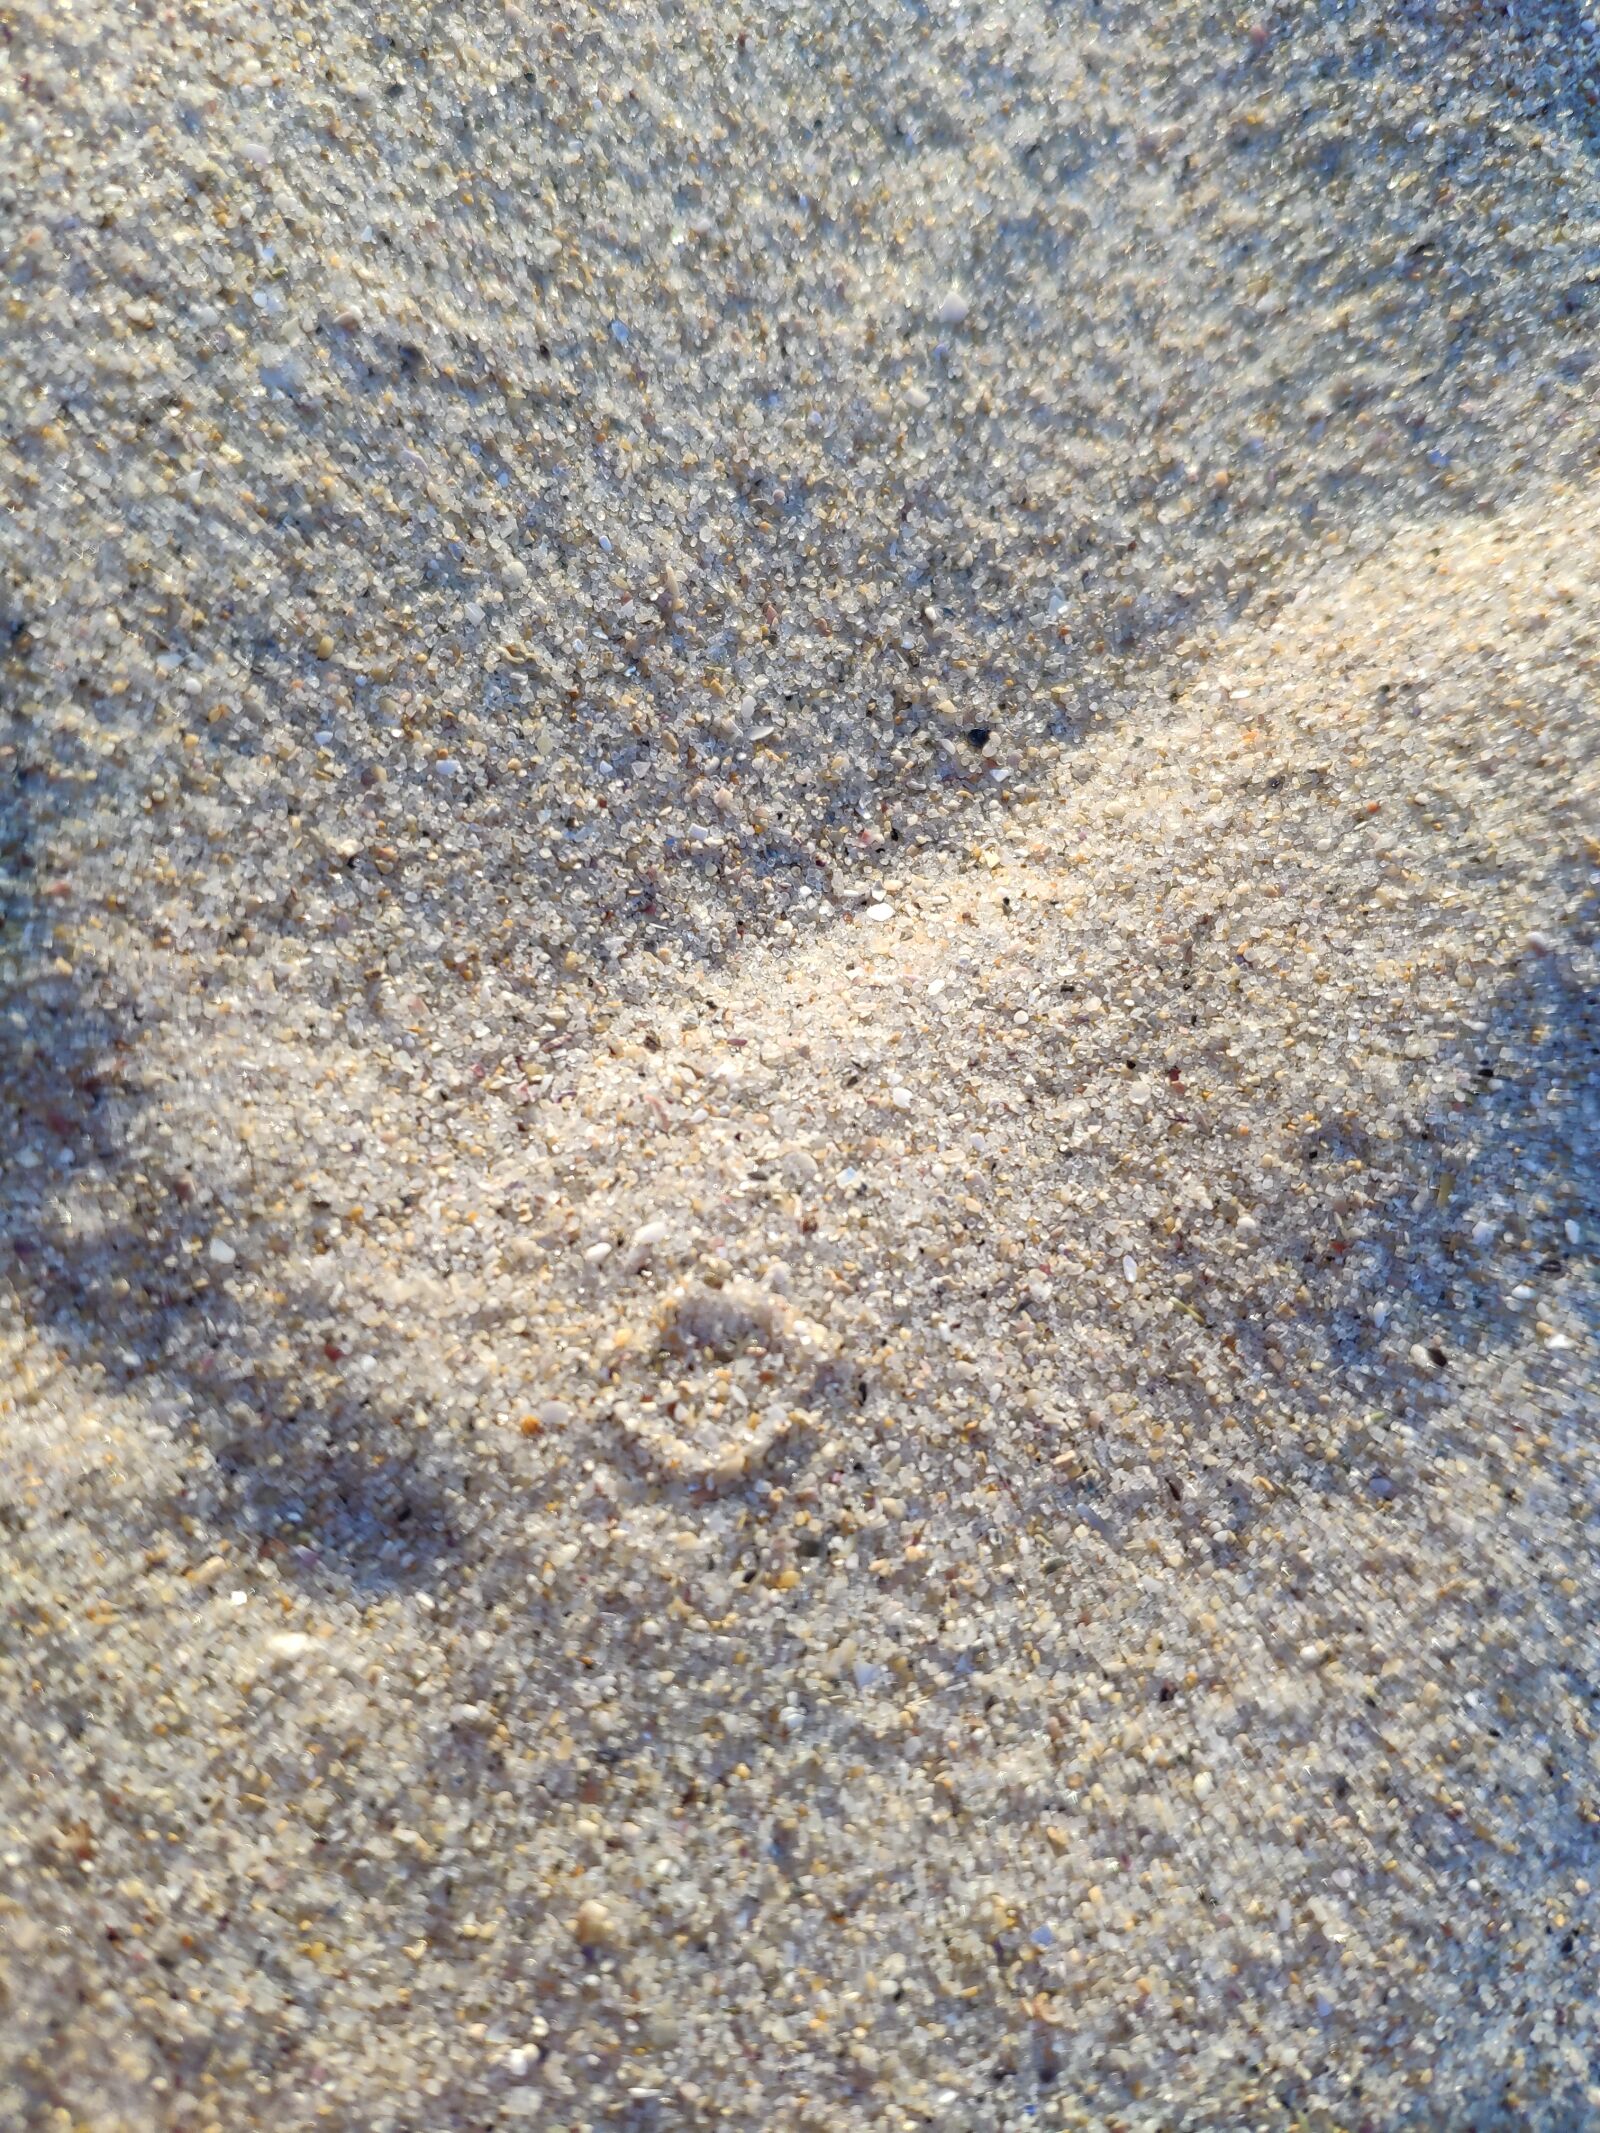 Xiaomi Mi MIX 2S sample photo. Sand, texture, textures photography